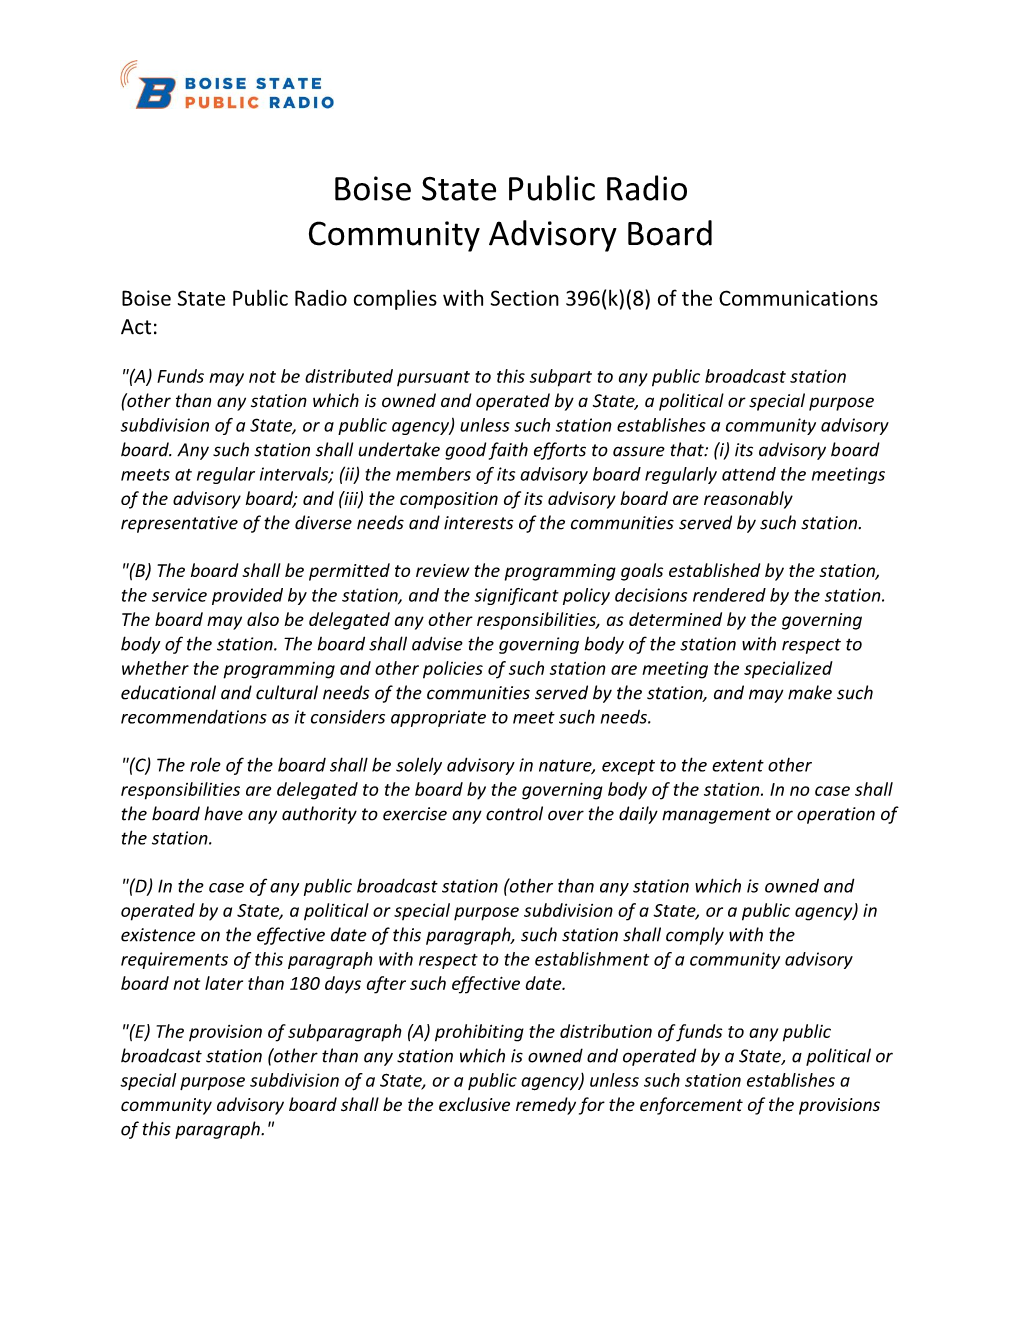 Boise State Public Radio Community Advisory Board